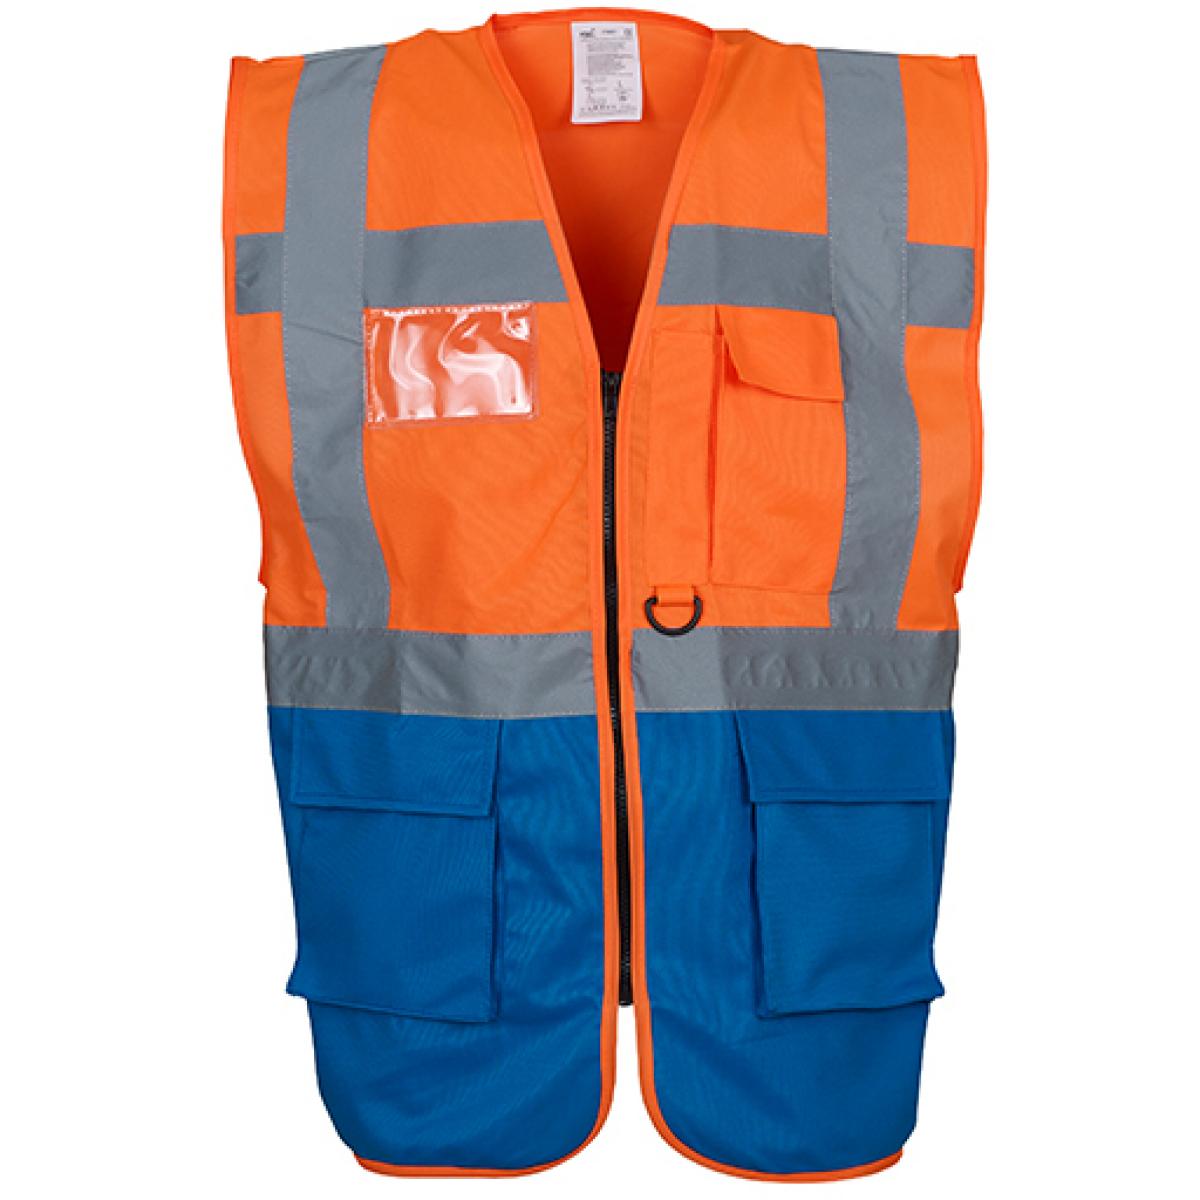 Hersteller: YOKO Herstellernummer: HVW801 Artikelbezeichnung: Herren Multi-Functional Executive Waistcoat Farbe: Hi-Vis Orange/Royal Blue